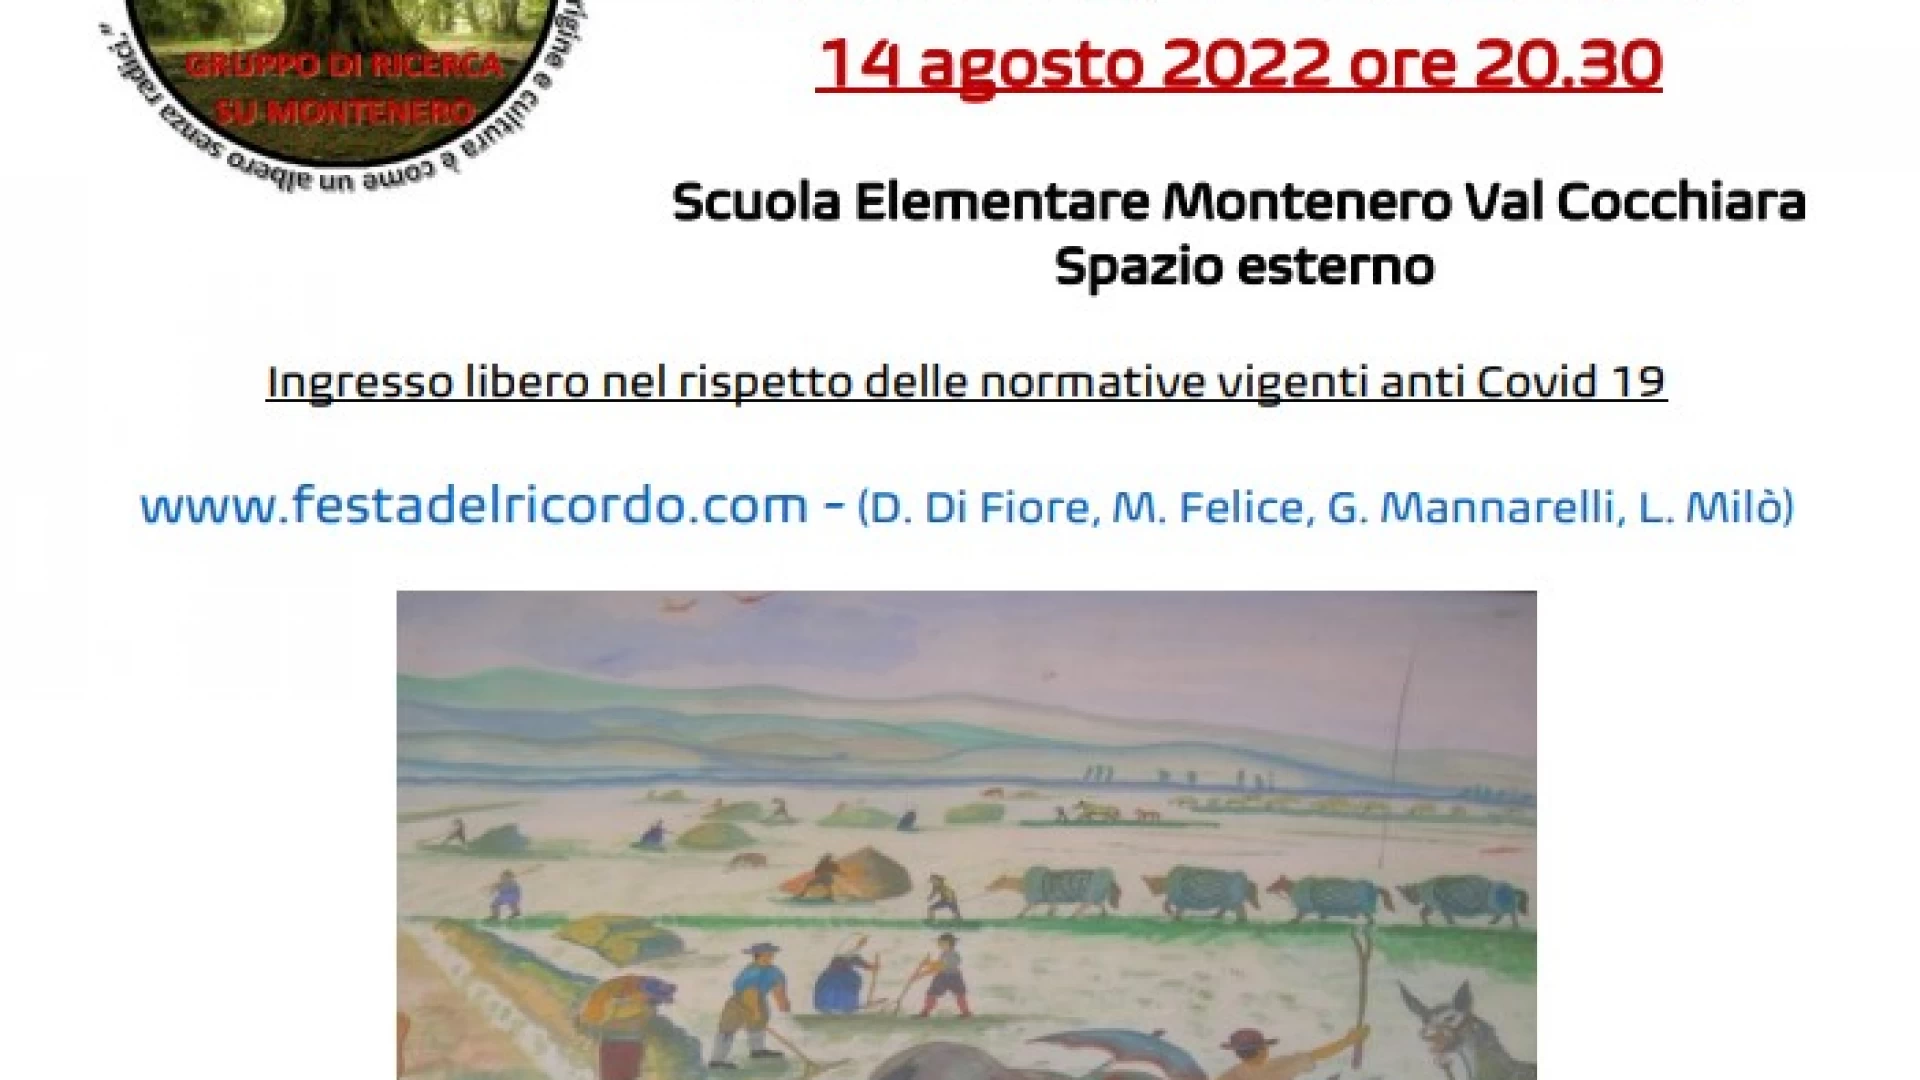 Montenero Val Cocchiara: tre opuscoli per far conoscere la storia del territorio. Le produzioni letterarie verranno presentate in occasione della Festa del Ricordo il prossimo 14 agosto.